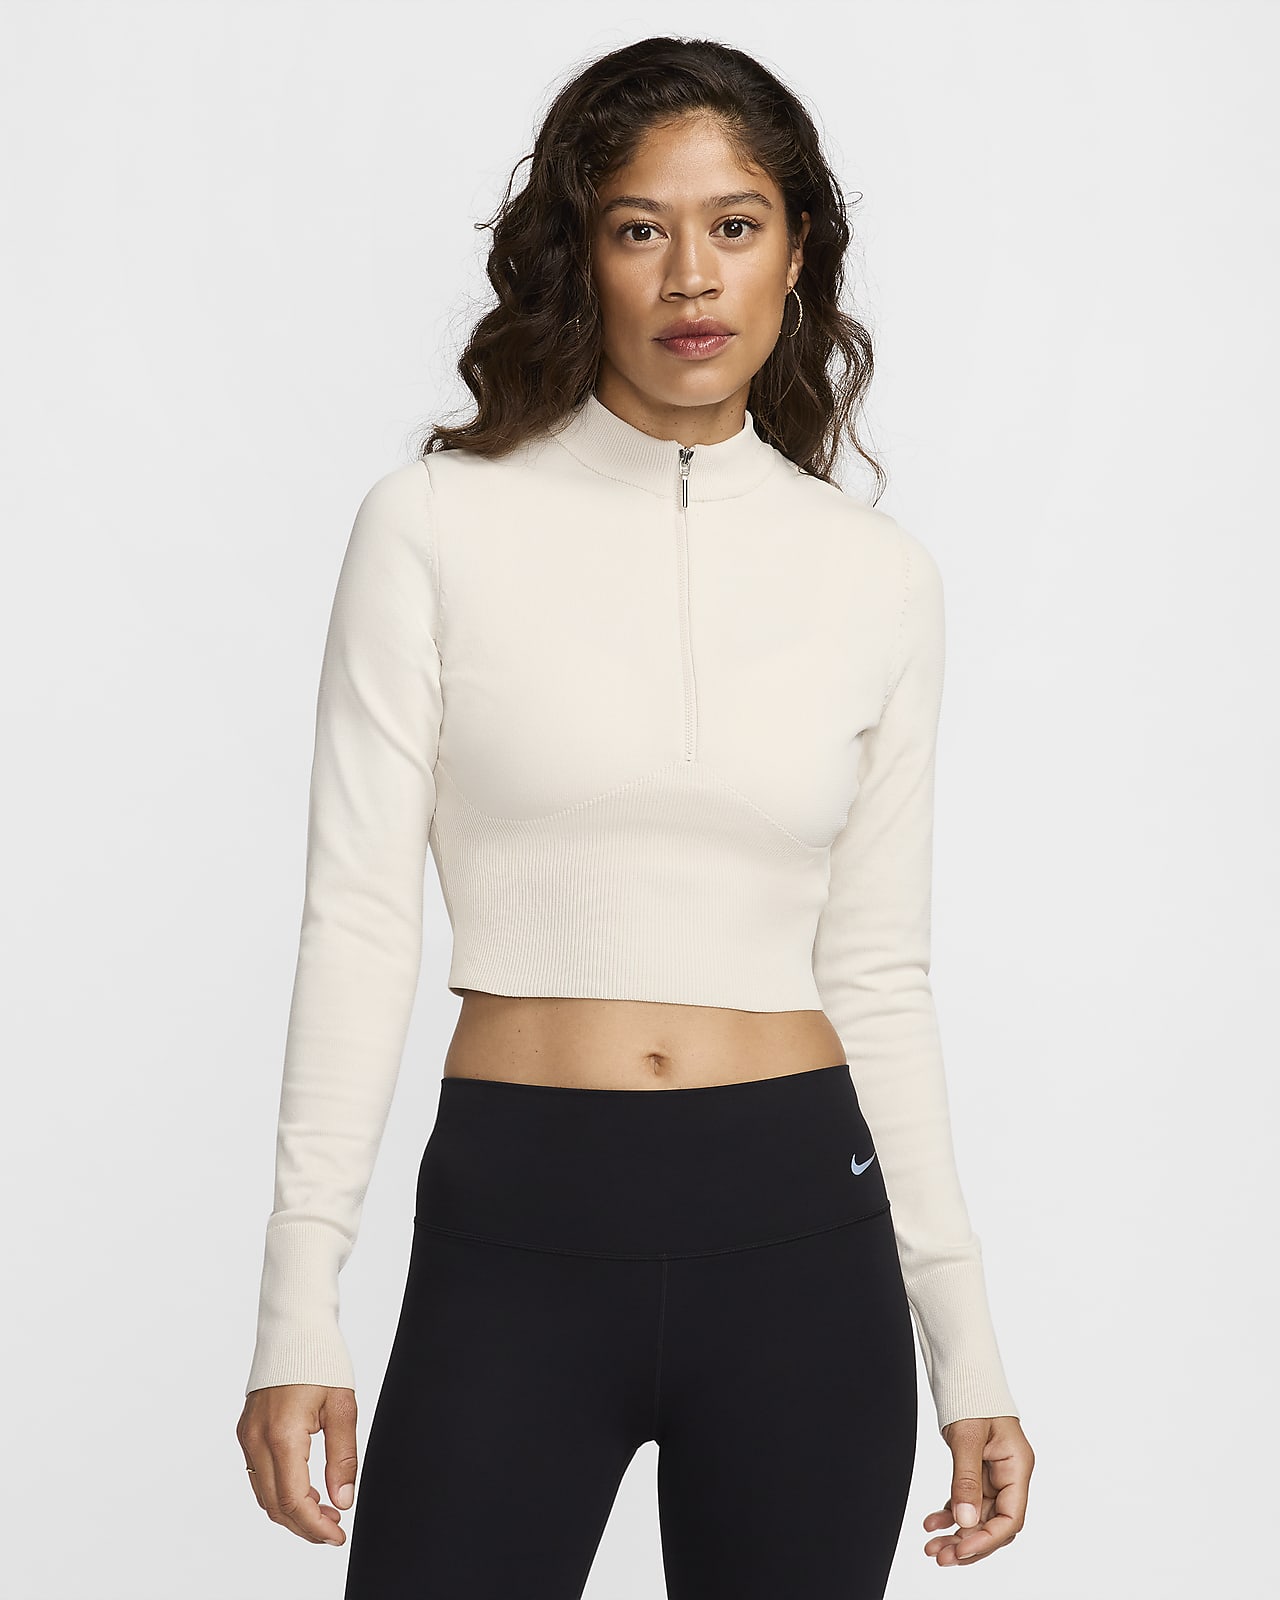 Dámský zeštíhlený zkrácený svetr s dlouhým rukávem a polovičním zipem Nike Sportswear Chill Knit